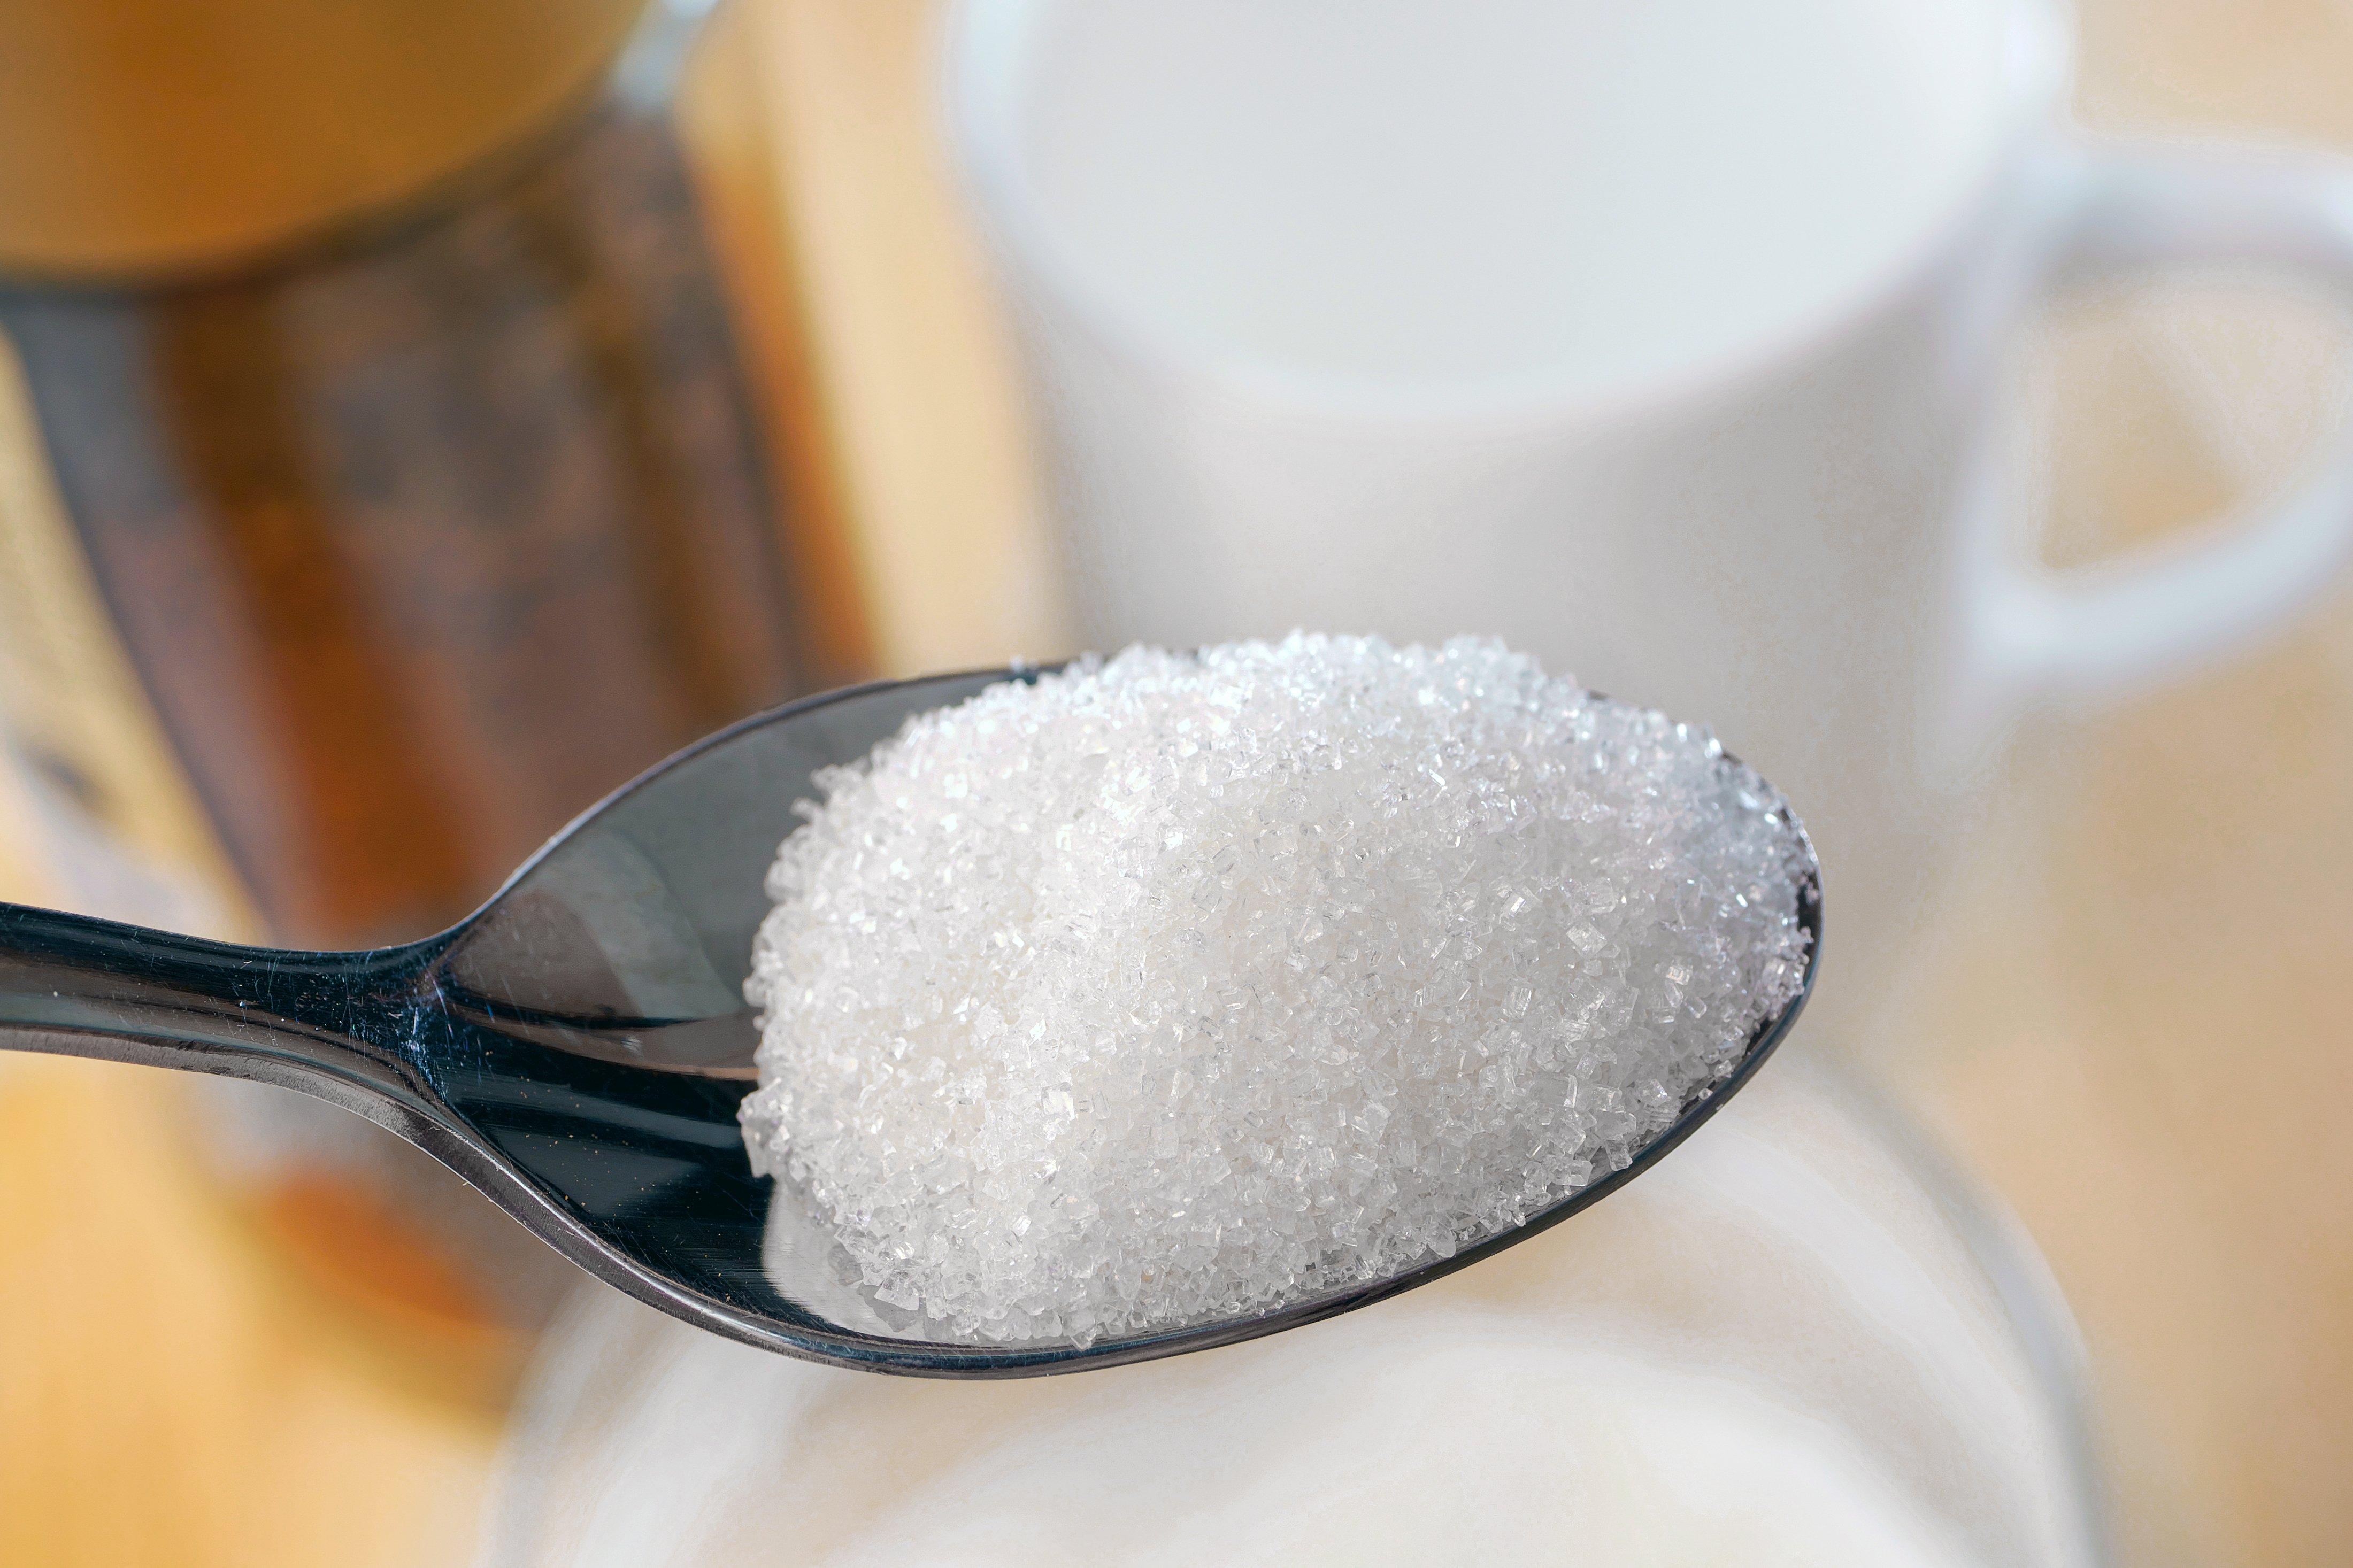 Especialistas explicam que a intenção do alerta da OMS é desencorajar a ingestão de produtos artificiais e do açúcar, estimulando o consumo de alimentos naturais